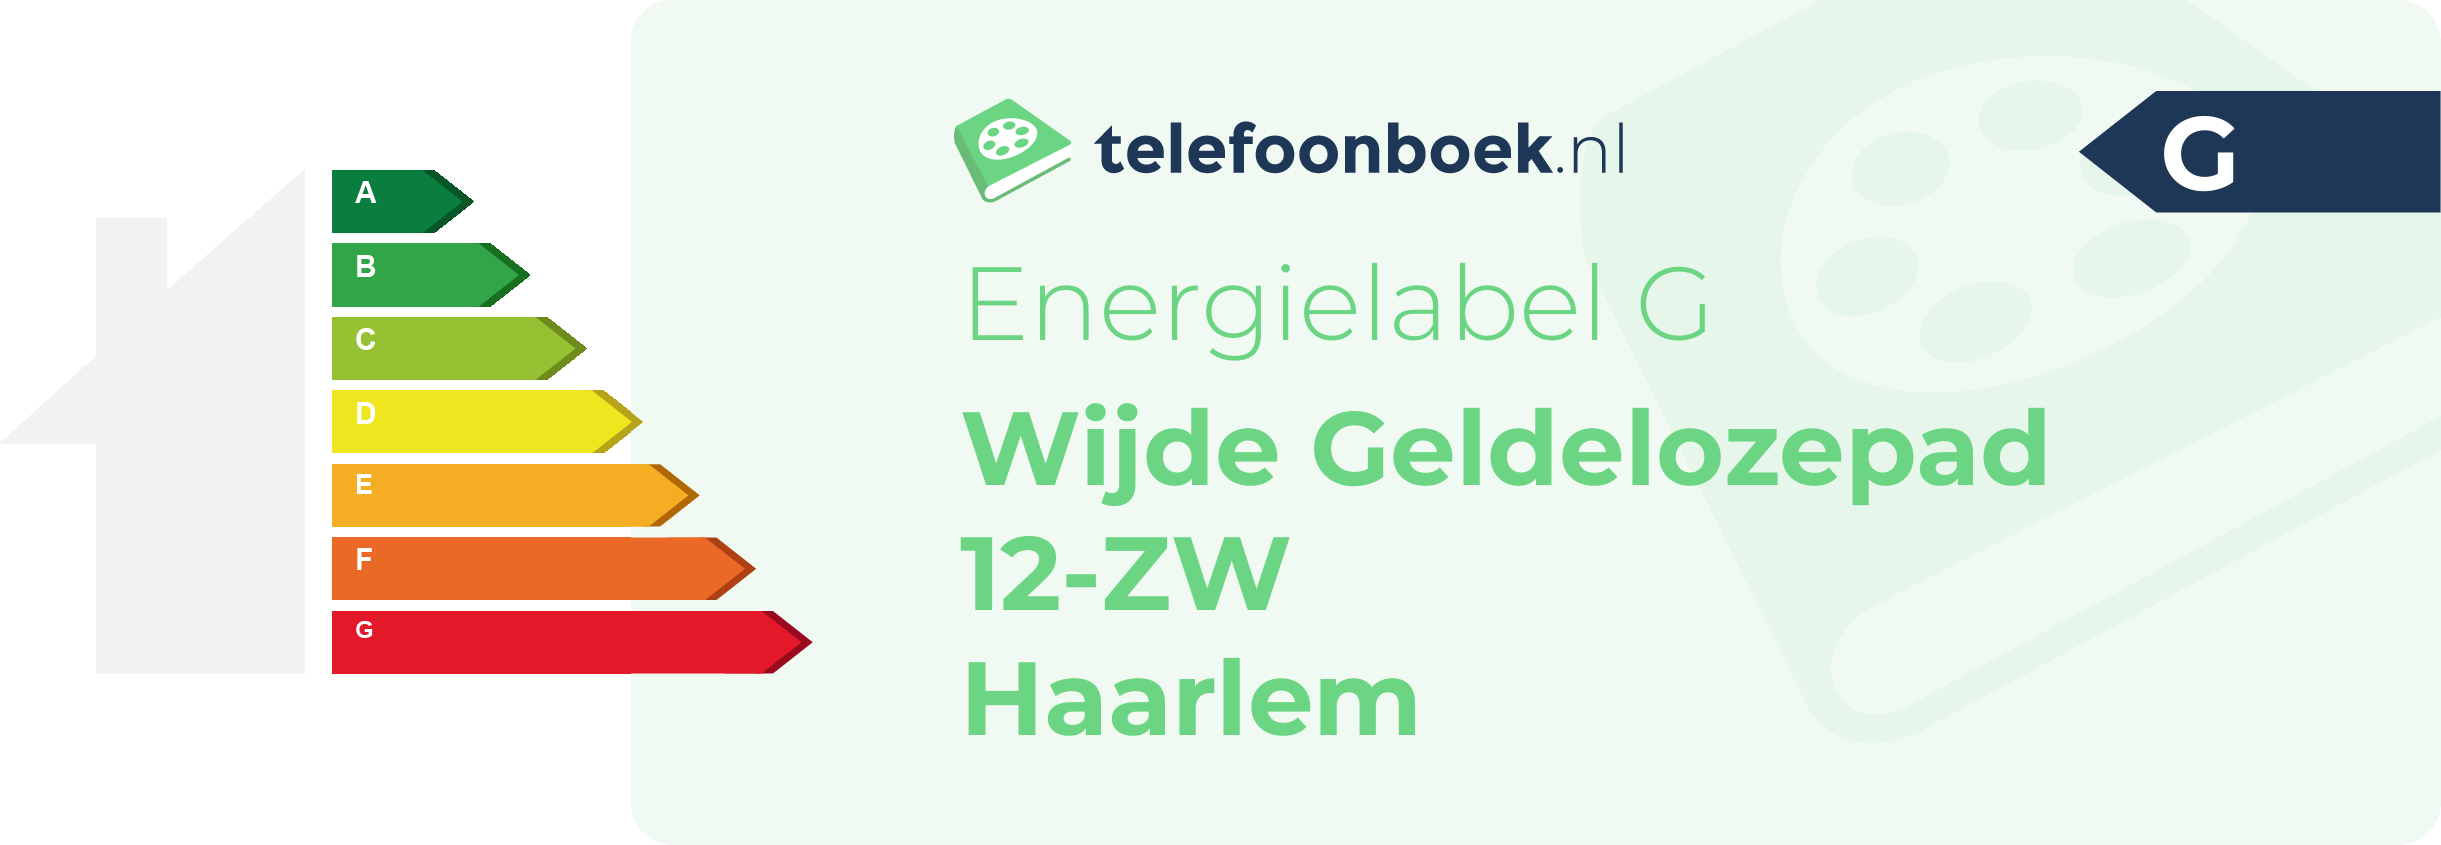 Energielabel Wijde Geldelozepad 12-ZW Haarlem